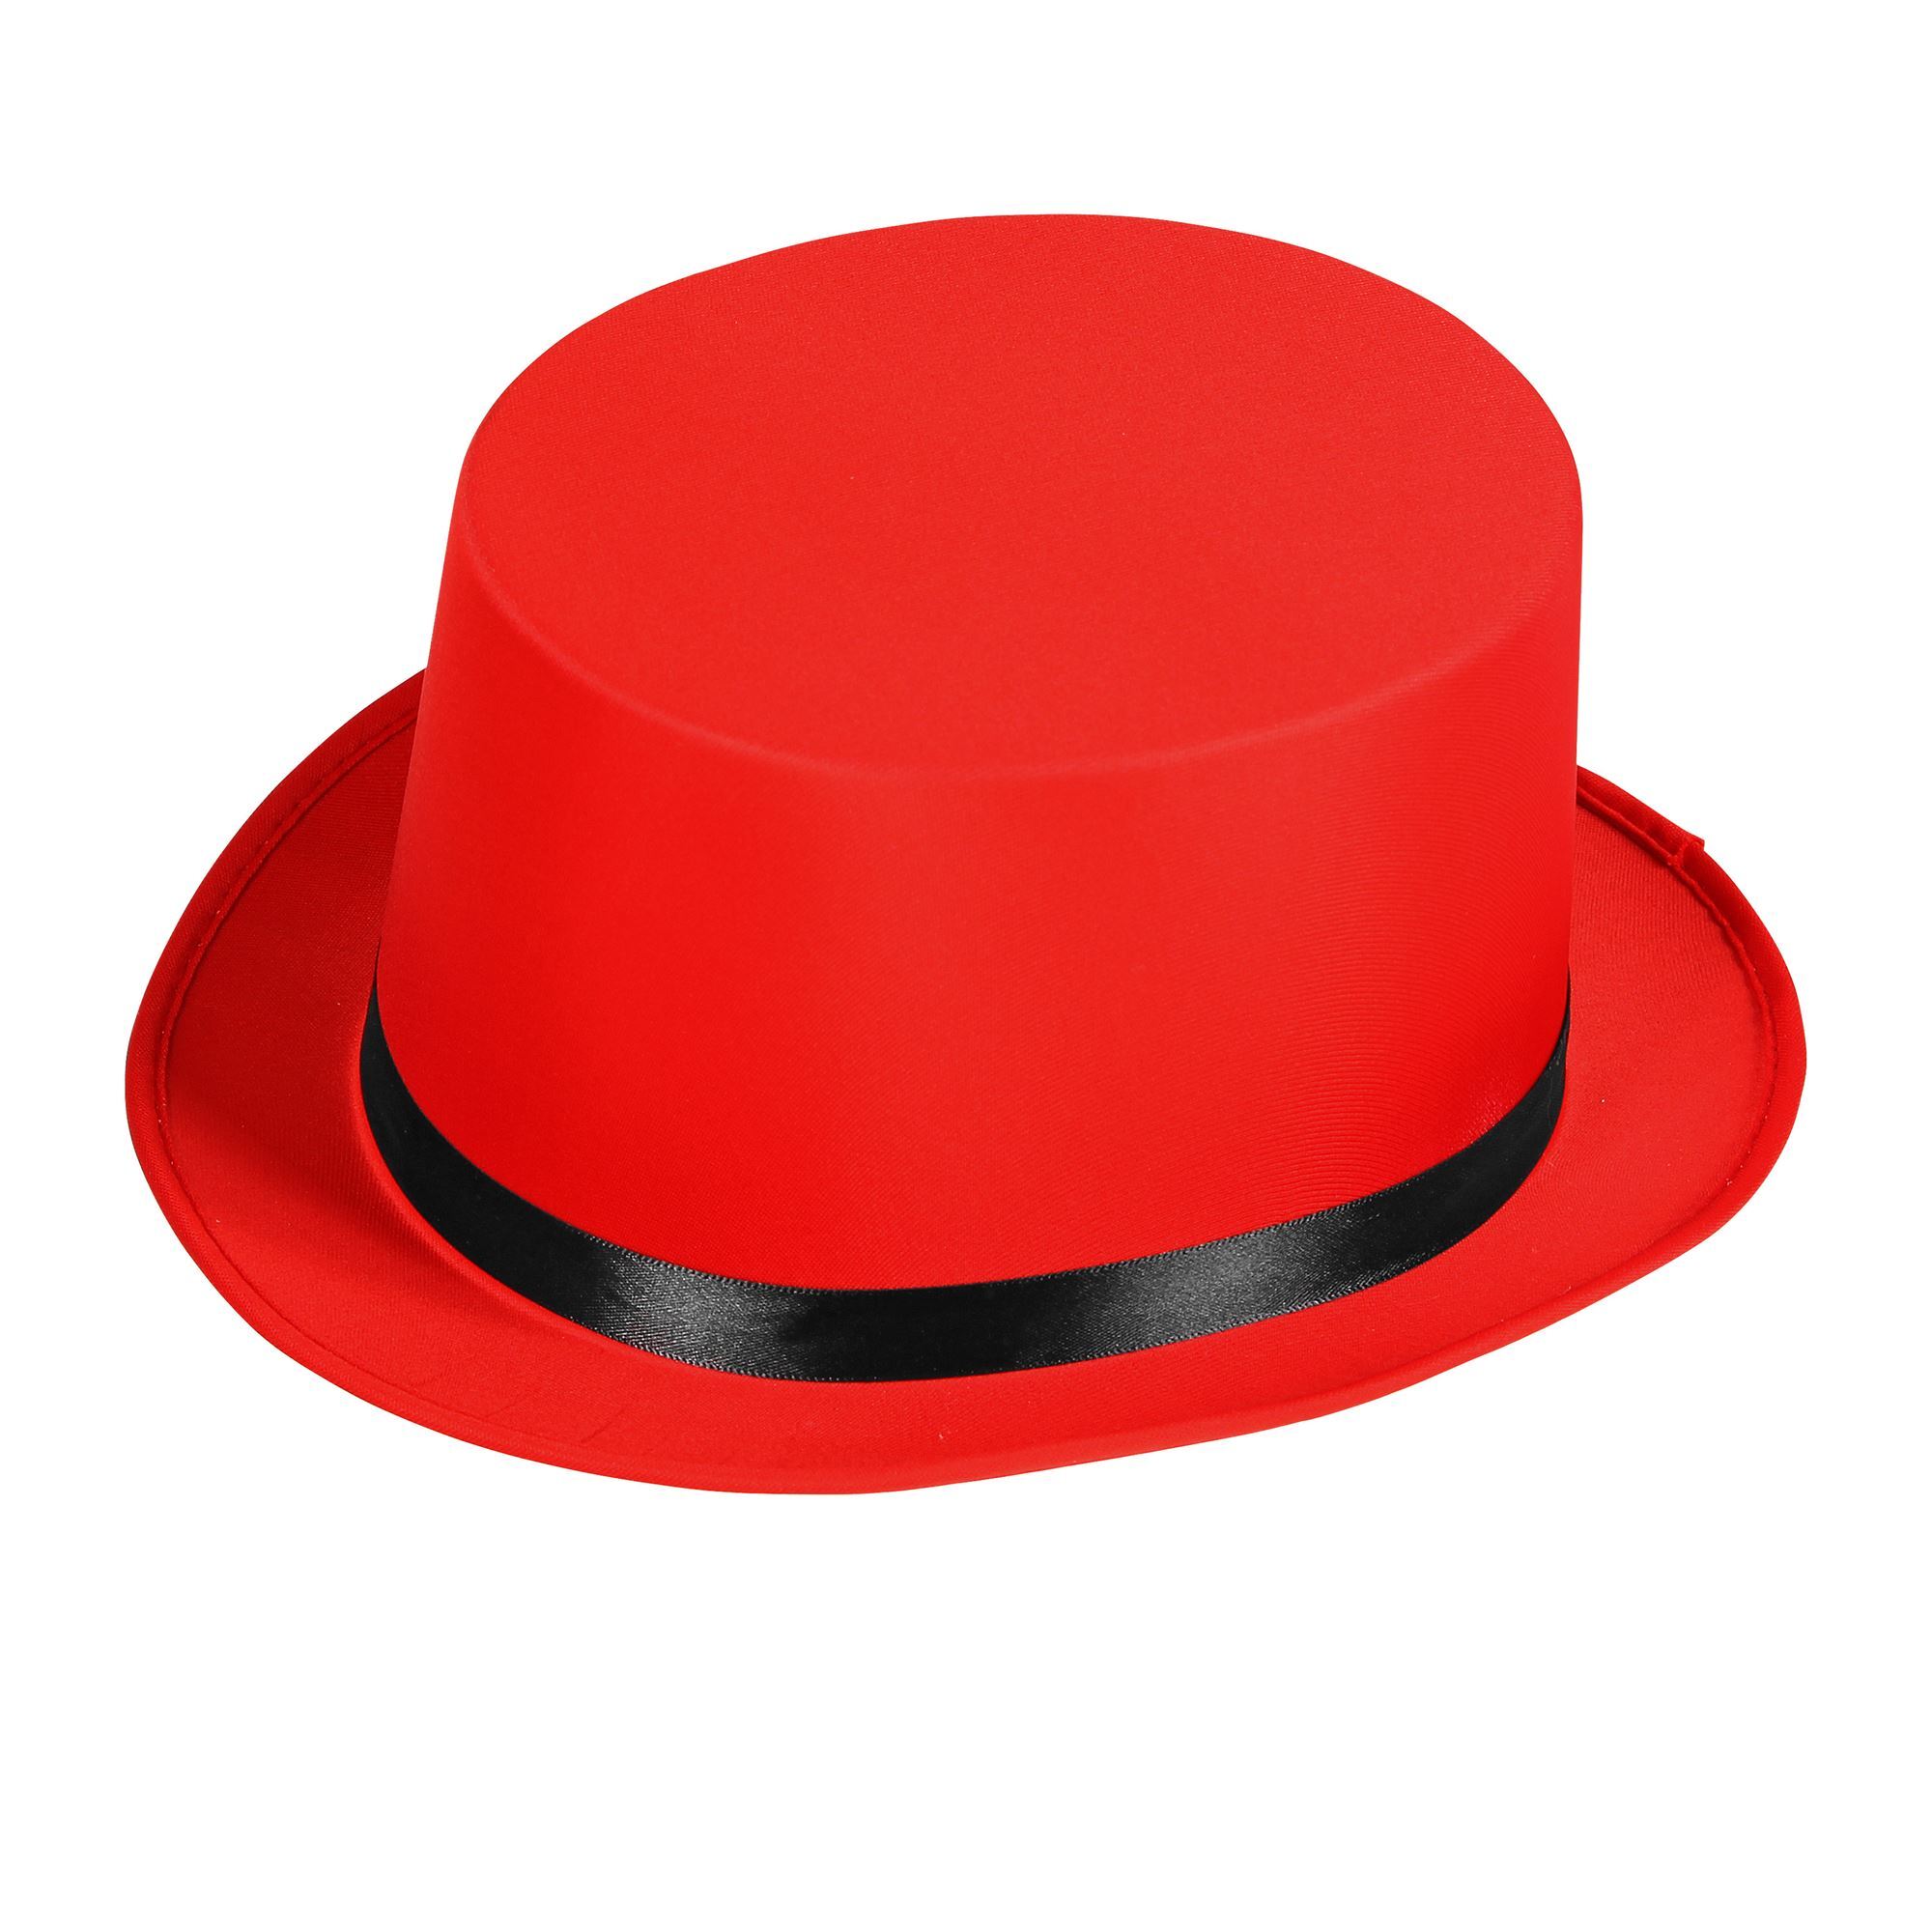 erectie Toestemming Kilauea Mountain Hoge hoed in het rood met zwarte band circus ...